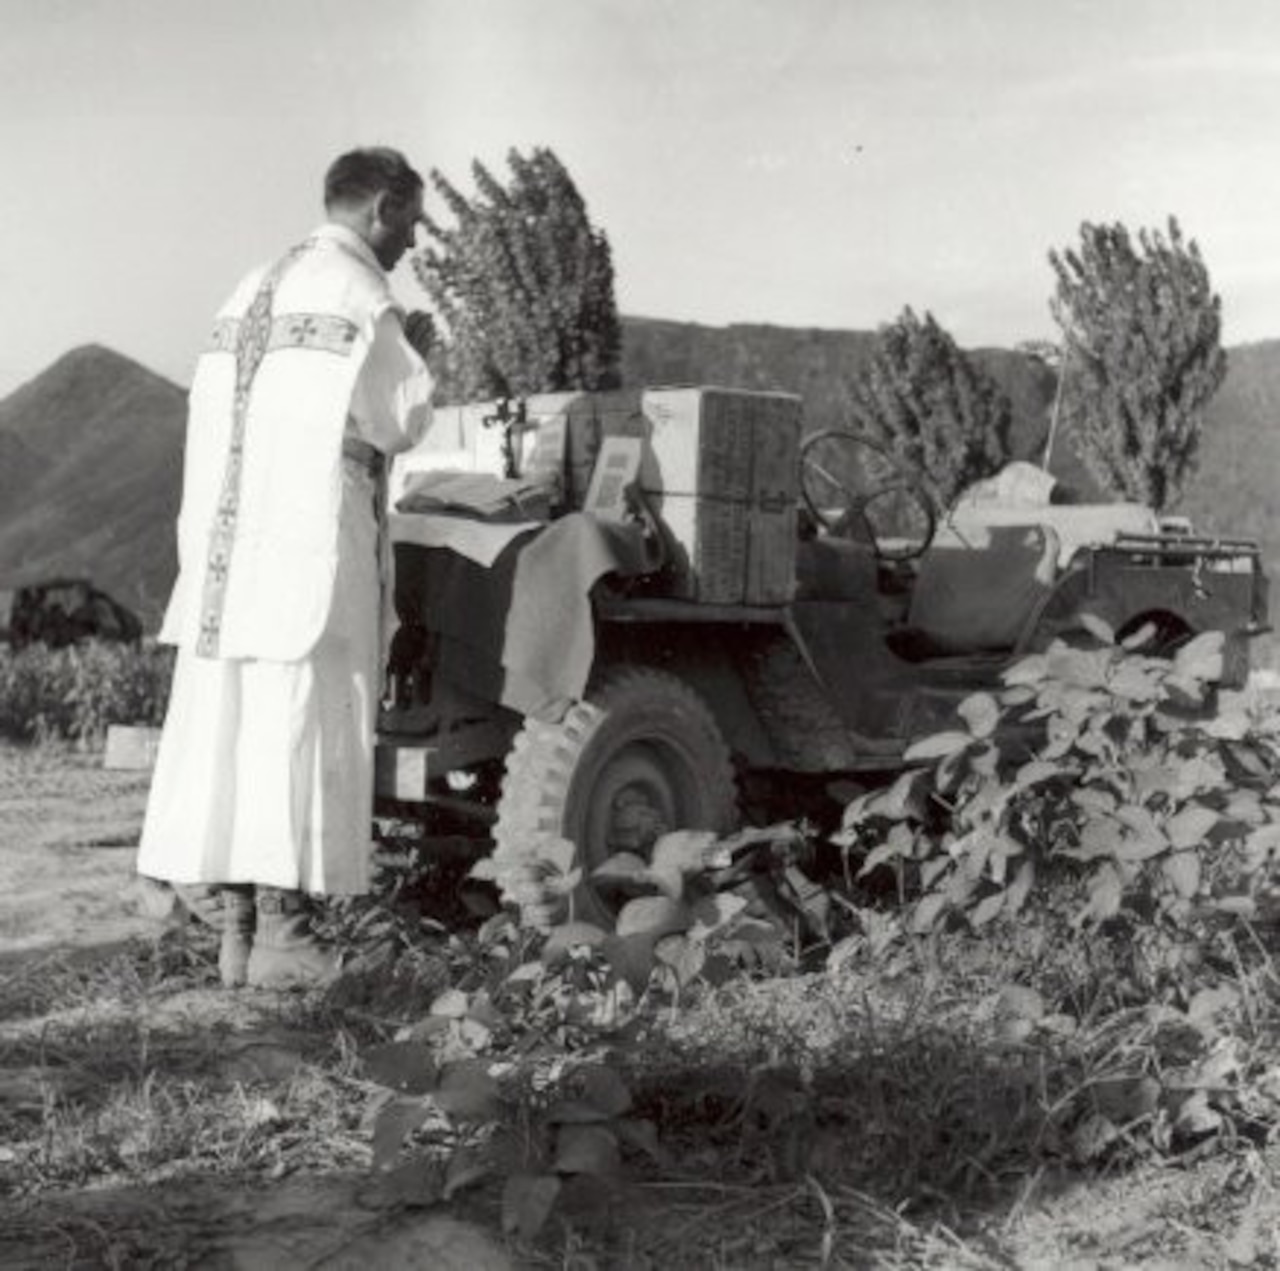 A priest prays toward an outdoor altar built on a Jeep.